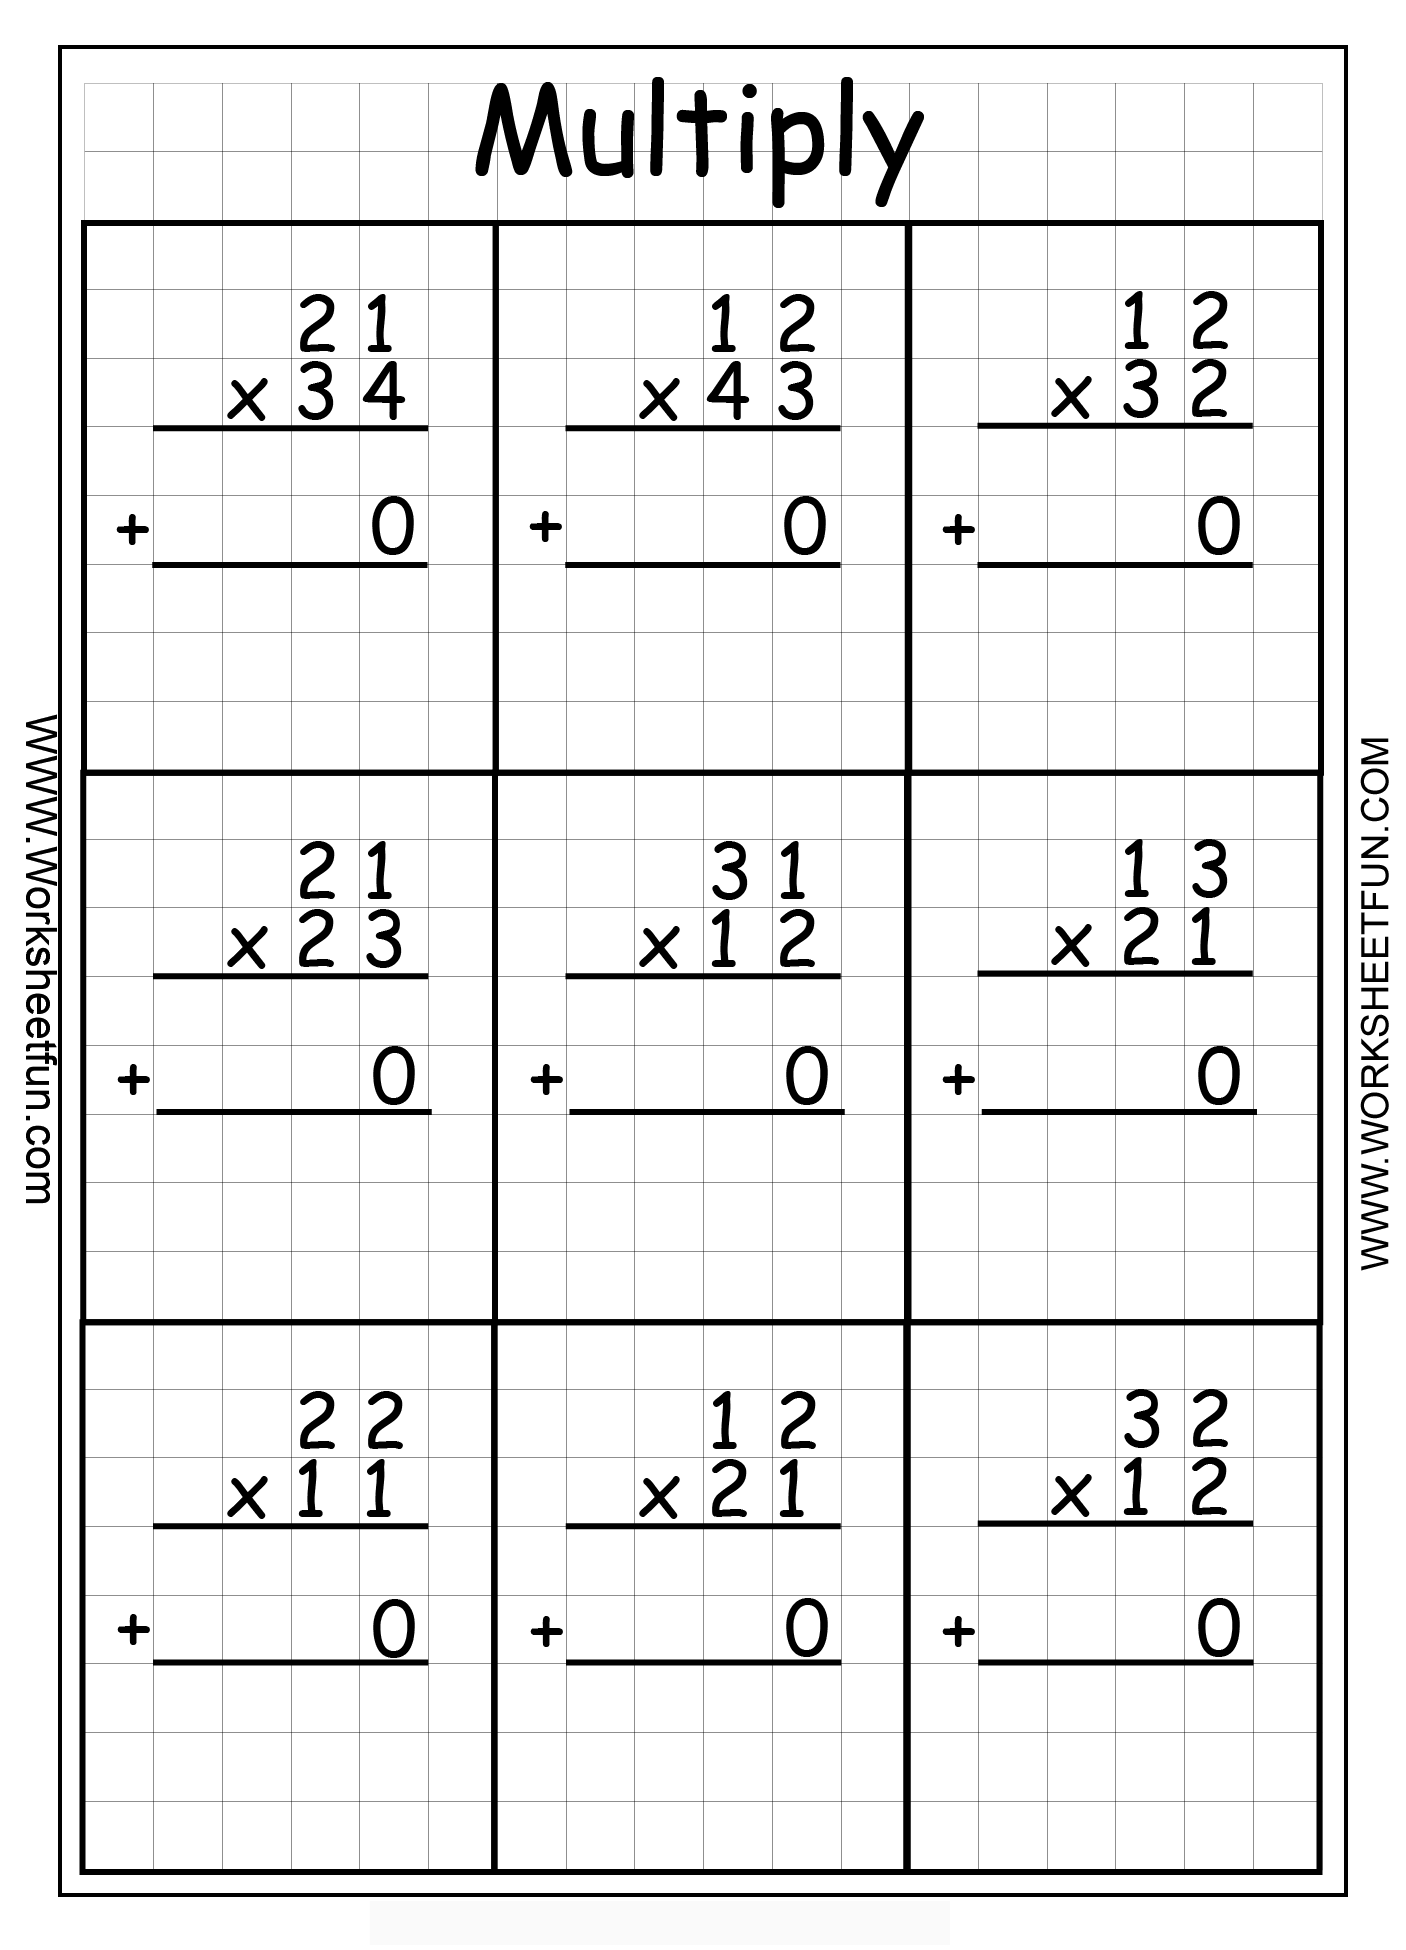 multiplication-2-digit-by-2-digit-worksheets-worksheetscity